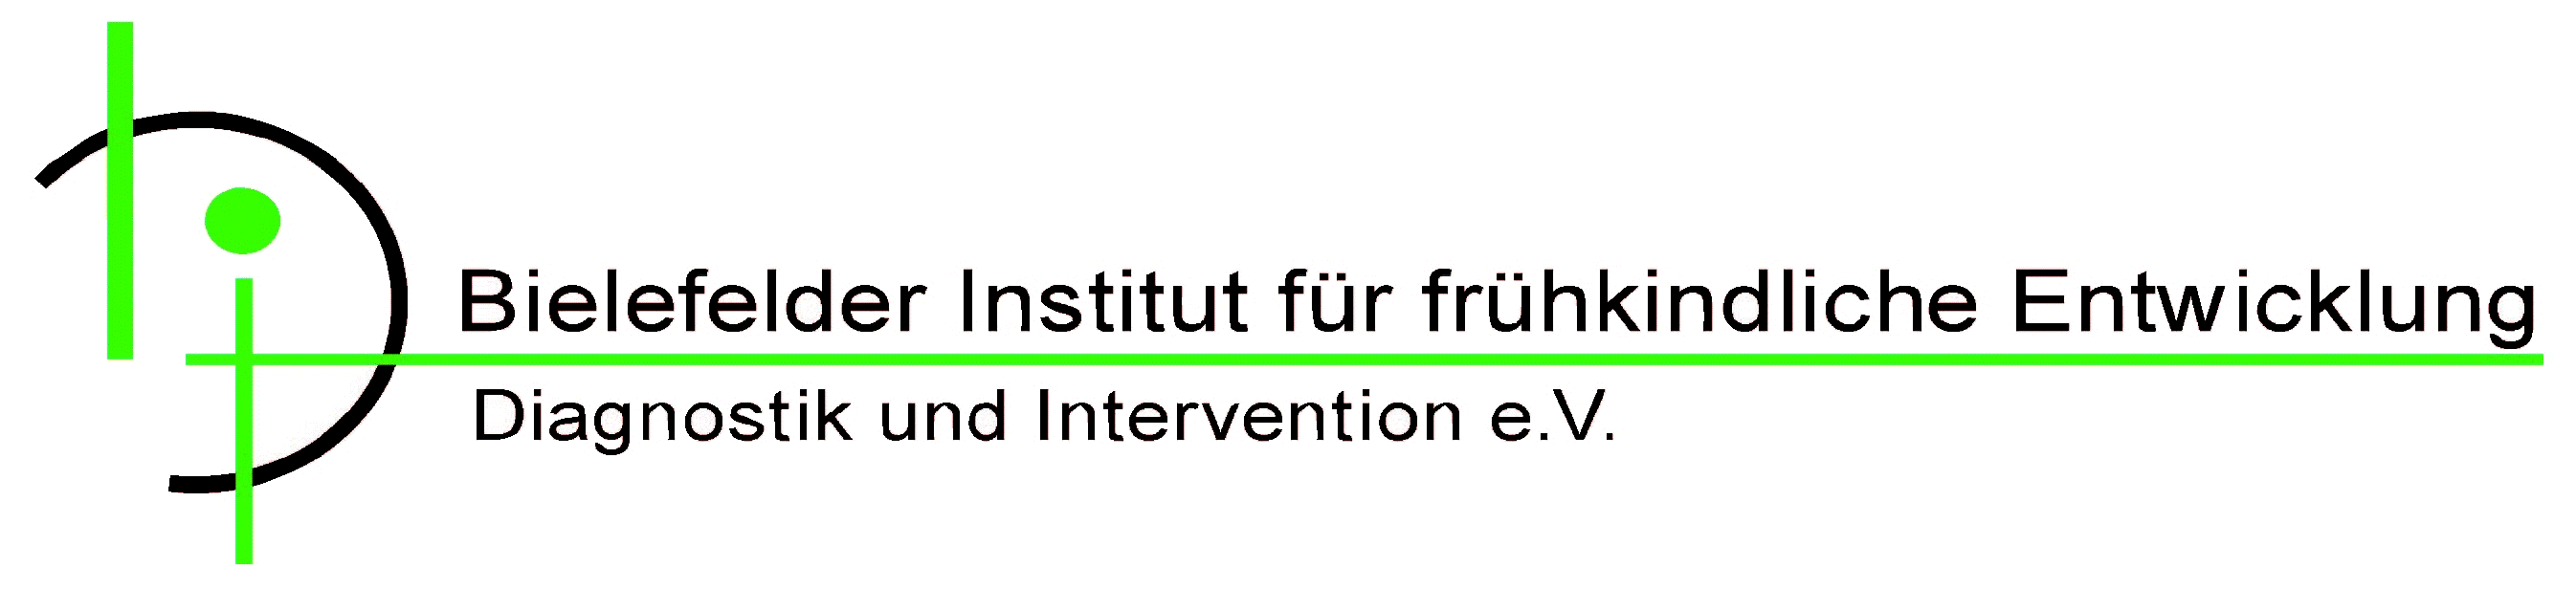 Bielefelder Institut für frühkindliche Entwicklung e.V., Dr. Maren Aktas (Diplom-Psychologin)